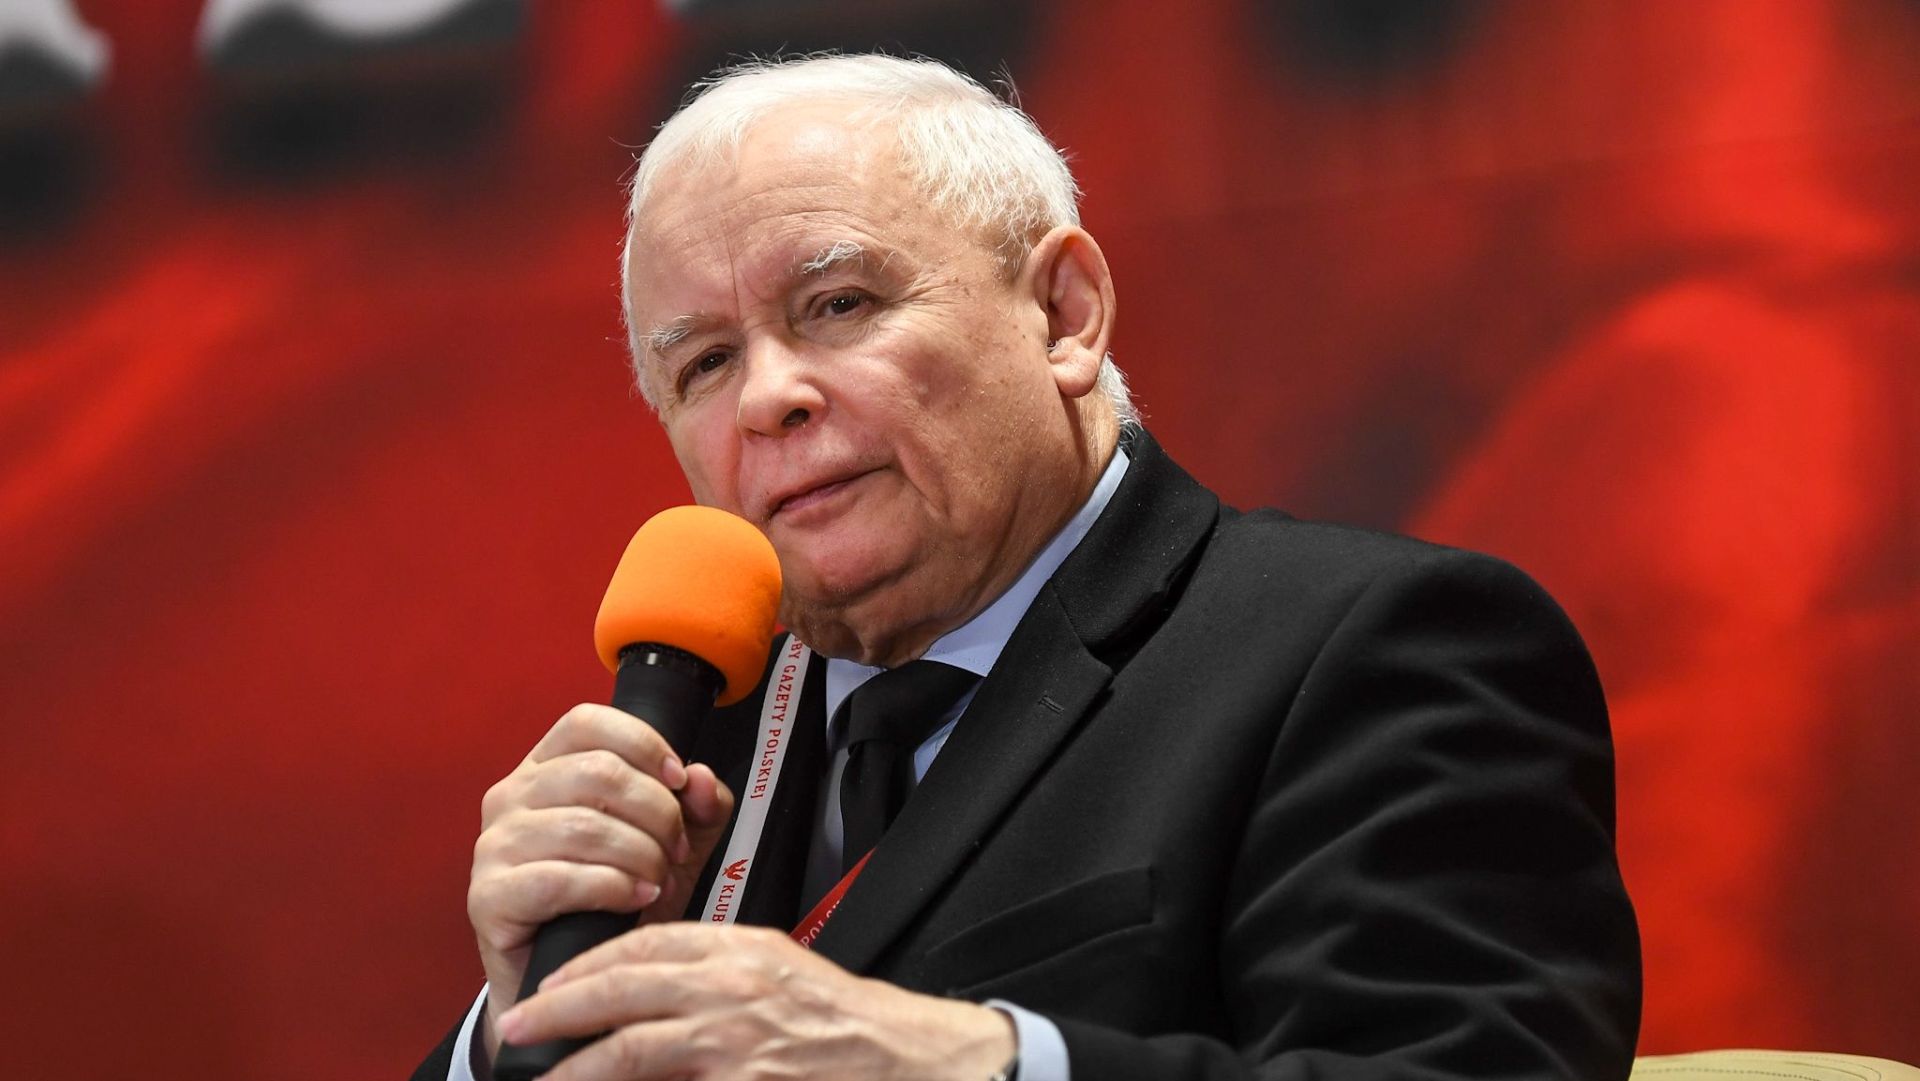 Pierwszym świadkiem, zeznającym przed sejmową komisją do spraw Pegasusa będzie prezes Prawa i Sprawiedliwości, były wicepremier Jarosław Kaczyński. Poinformowała o tym w czwartek szefowa komisji, Magdalena Sroka.